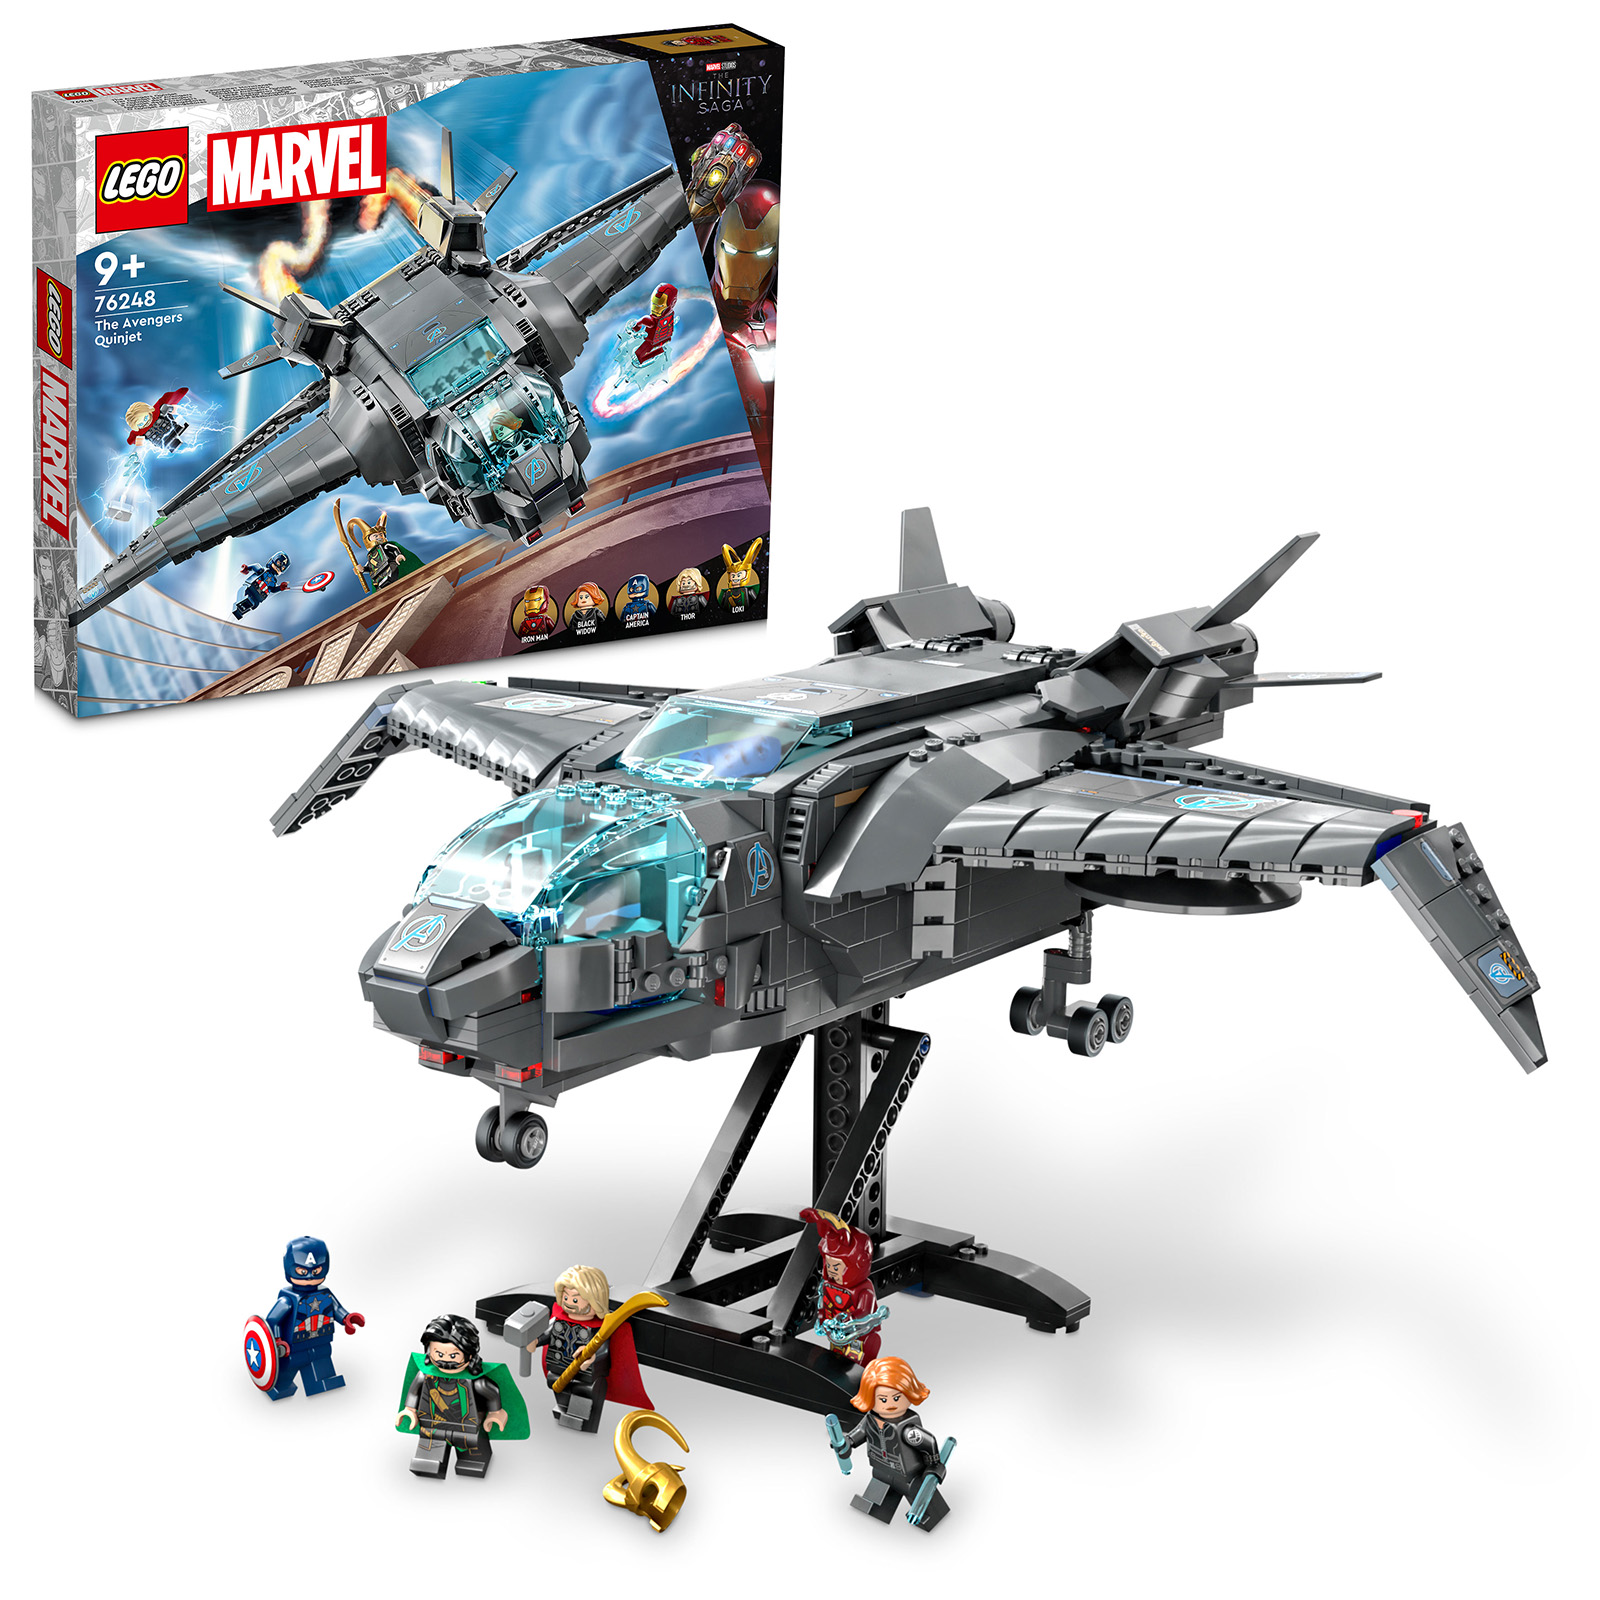 ▻ 2023 年上半期の LEGO Marvel ノベルティ: ビジュアルが公開され